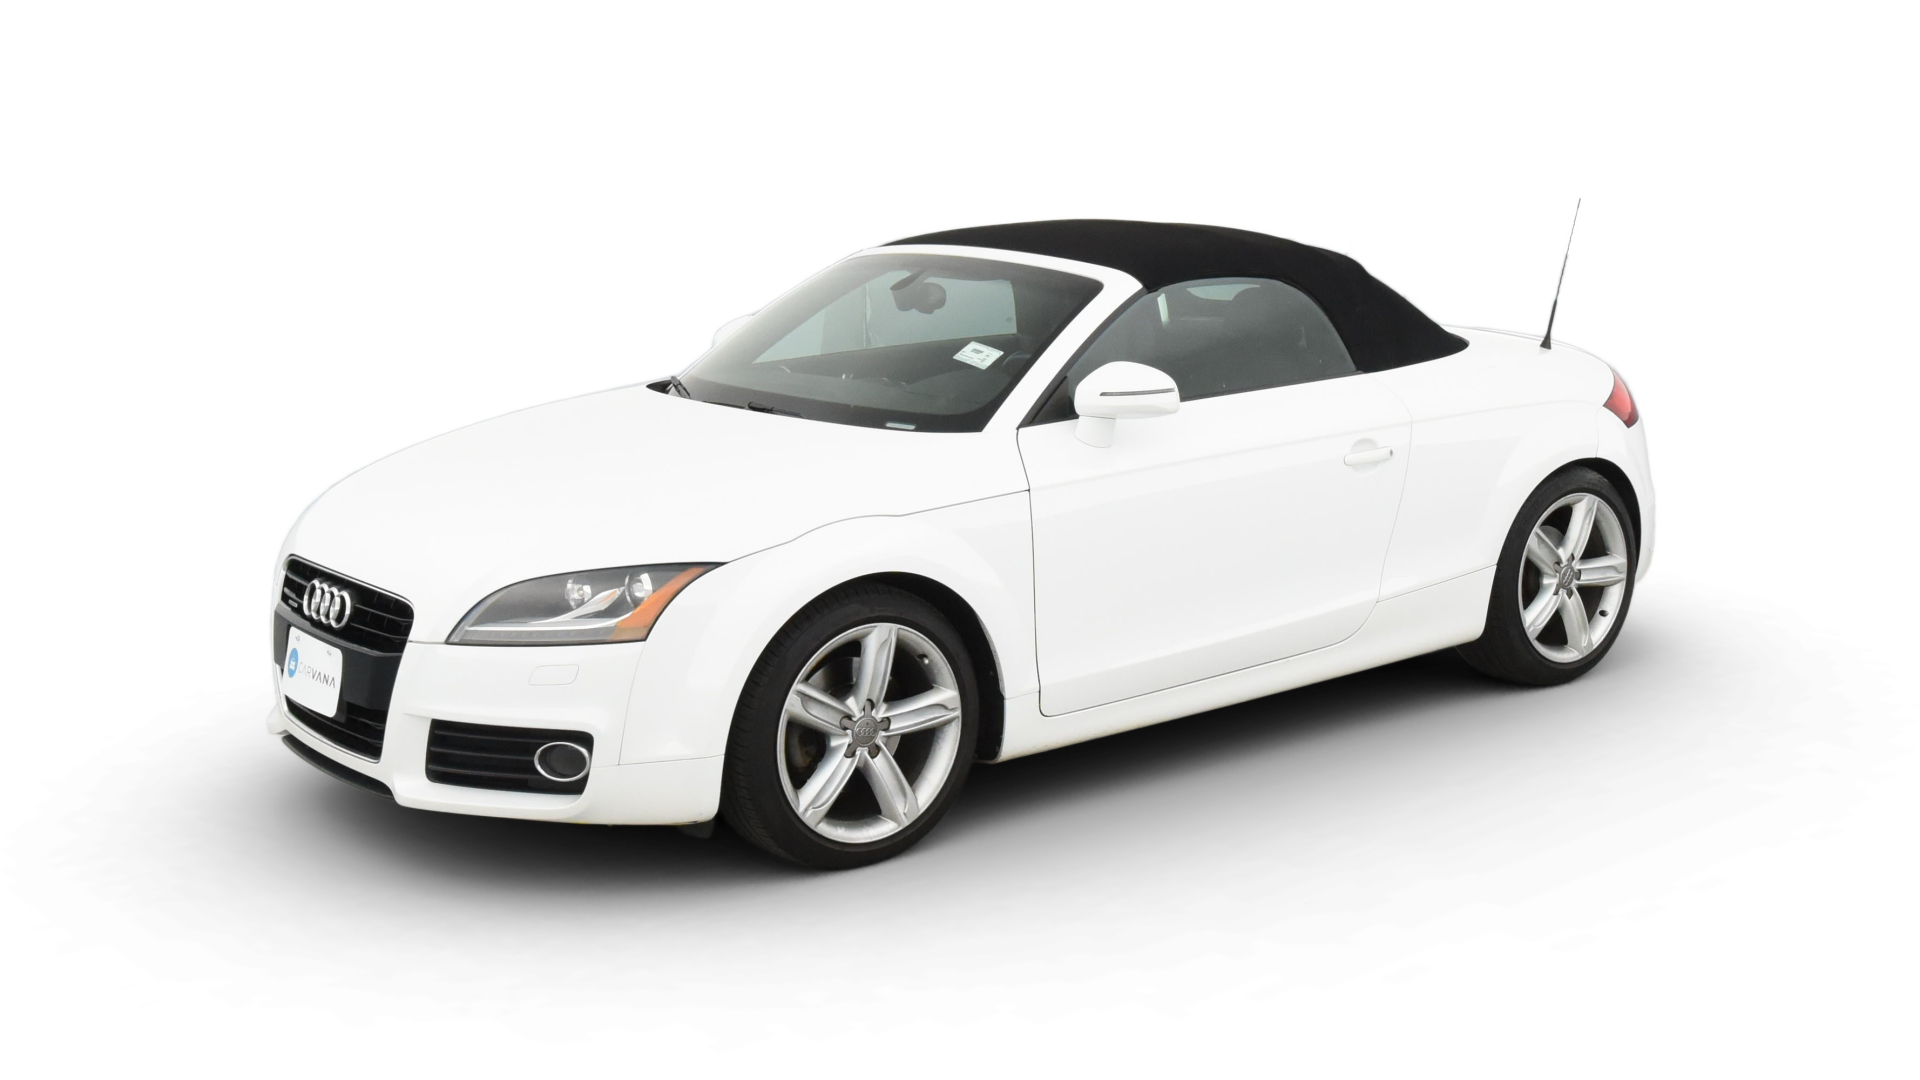 Audi TT model image.